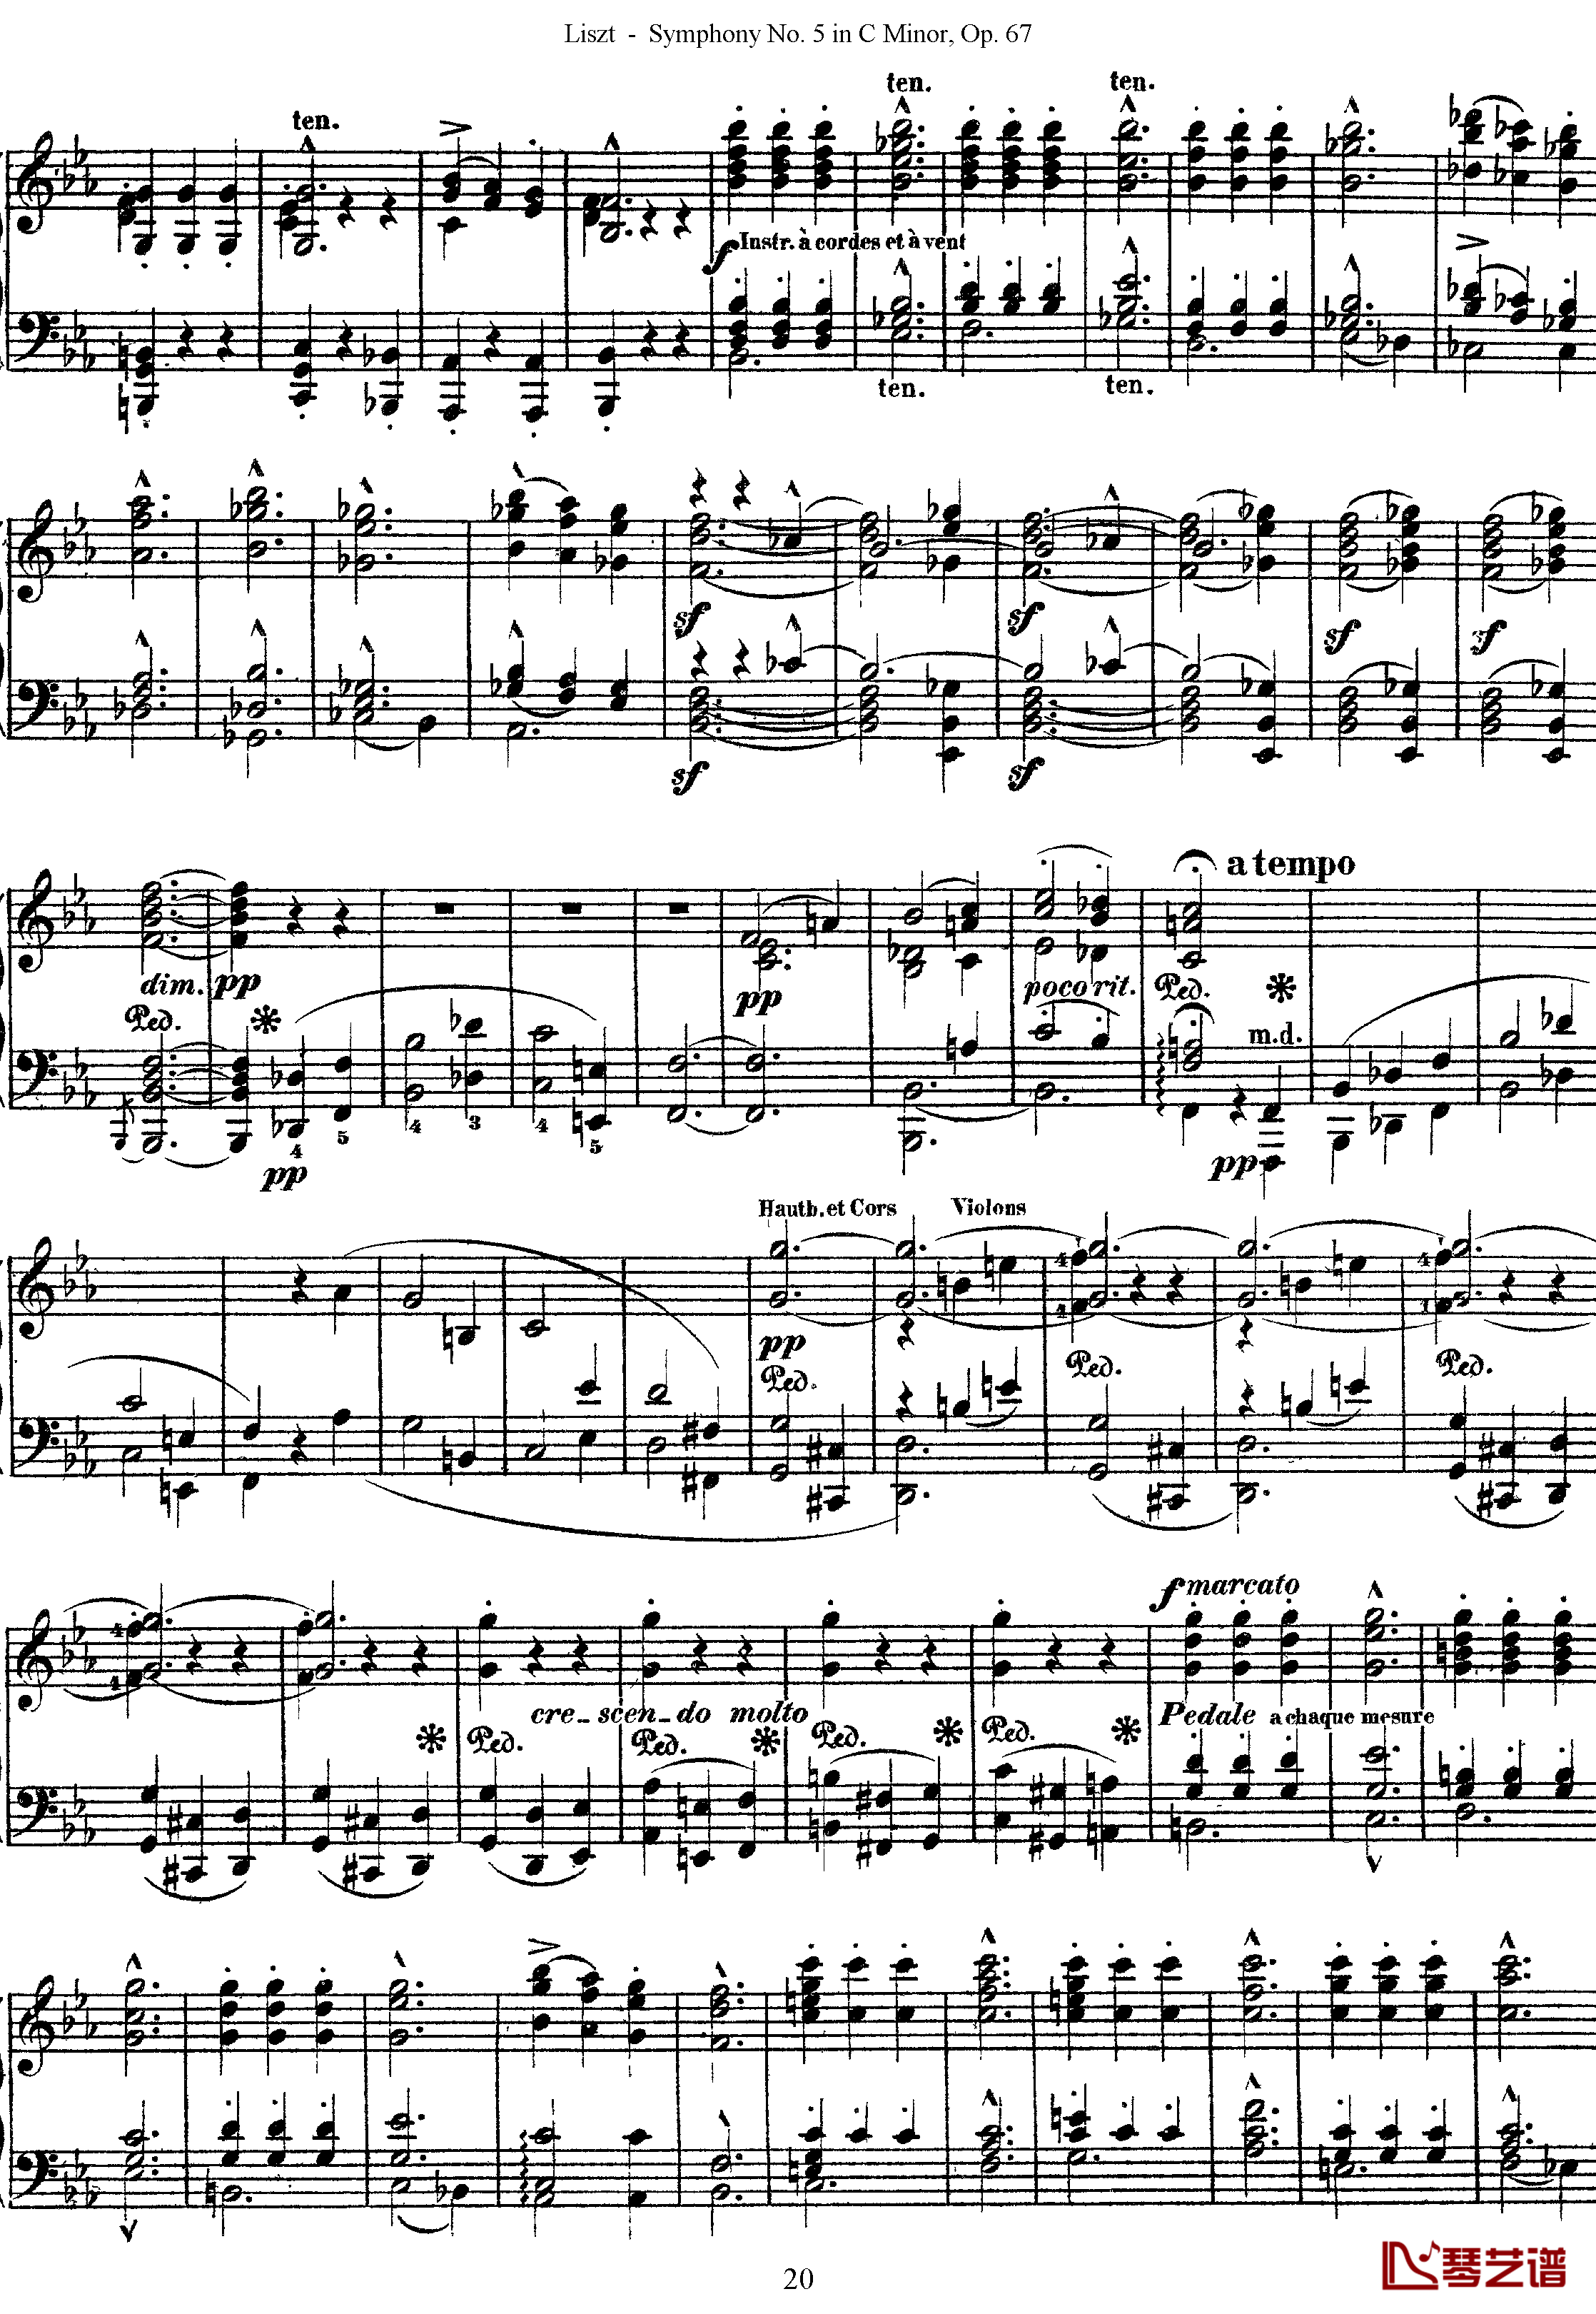 第五交响乐的钢琴曲钢琴谱-李斯特-李斯特改编自贝多芬20